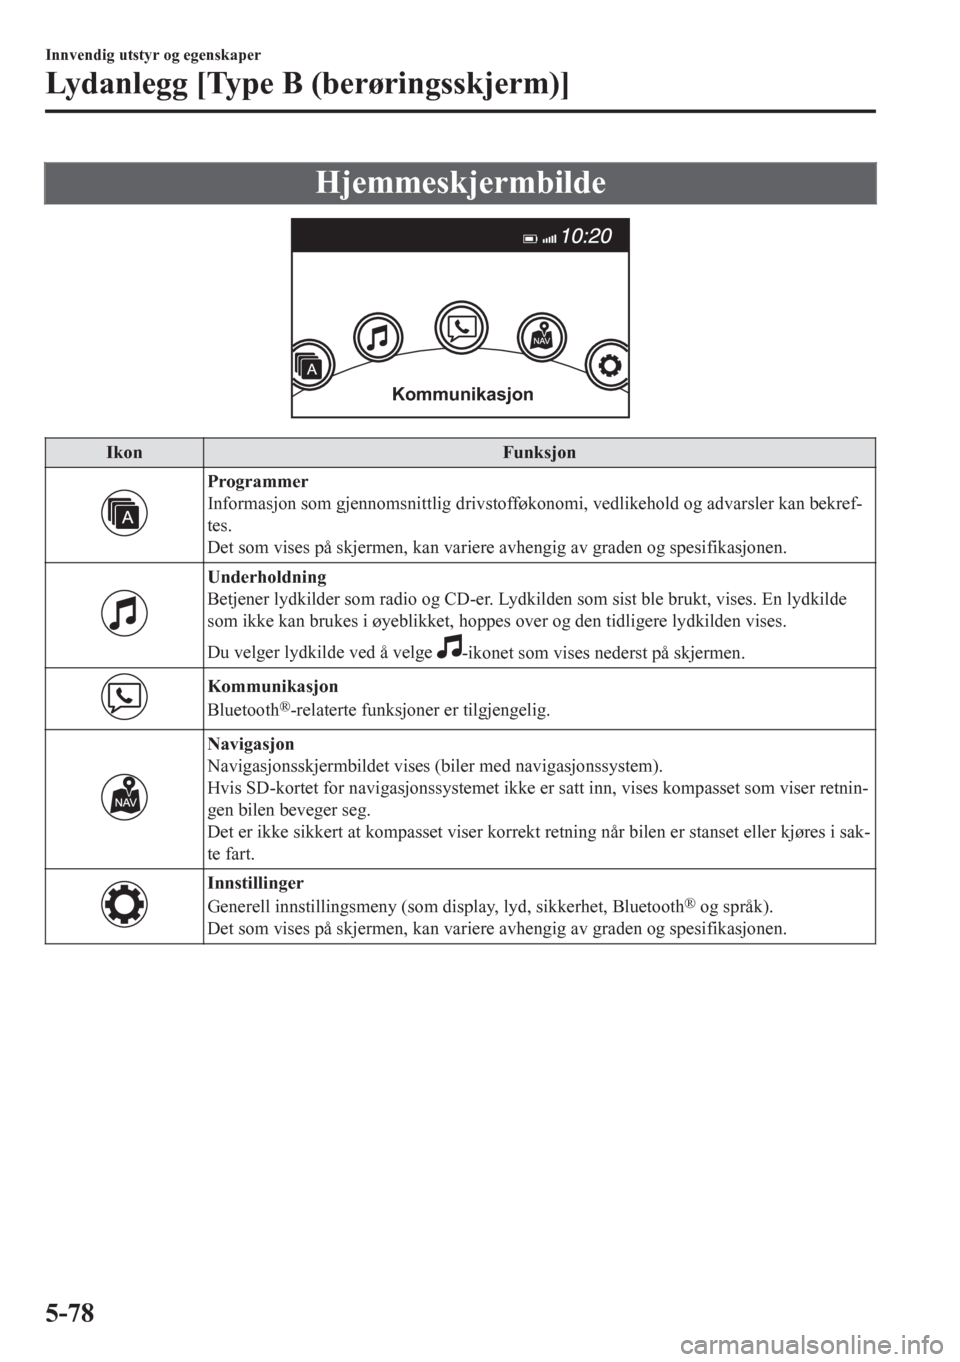 MAZDA MODEL CX-5 2018  Brukerhåndbok (in Norwegian) Hjemmeskjermbilde
Kommunikasjon
Ikon Funksjon
Programmer
Informasjon som gjennomsnittlig drivstofføkonomi, vedlikehold og advarsler kan bekref-
tes.
Det som vises på skjermen, kan variere avhengig a